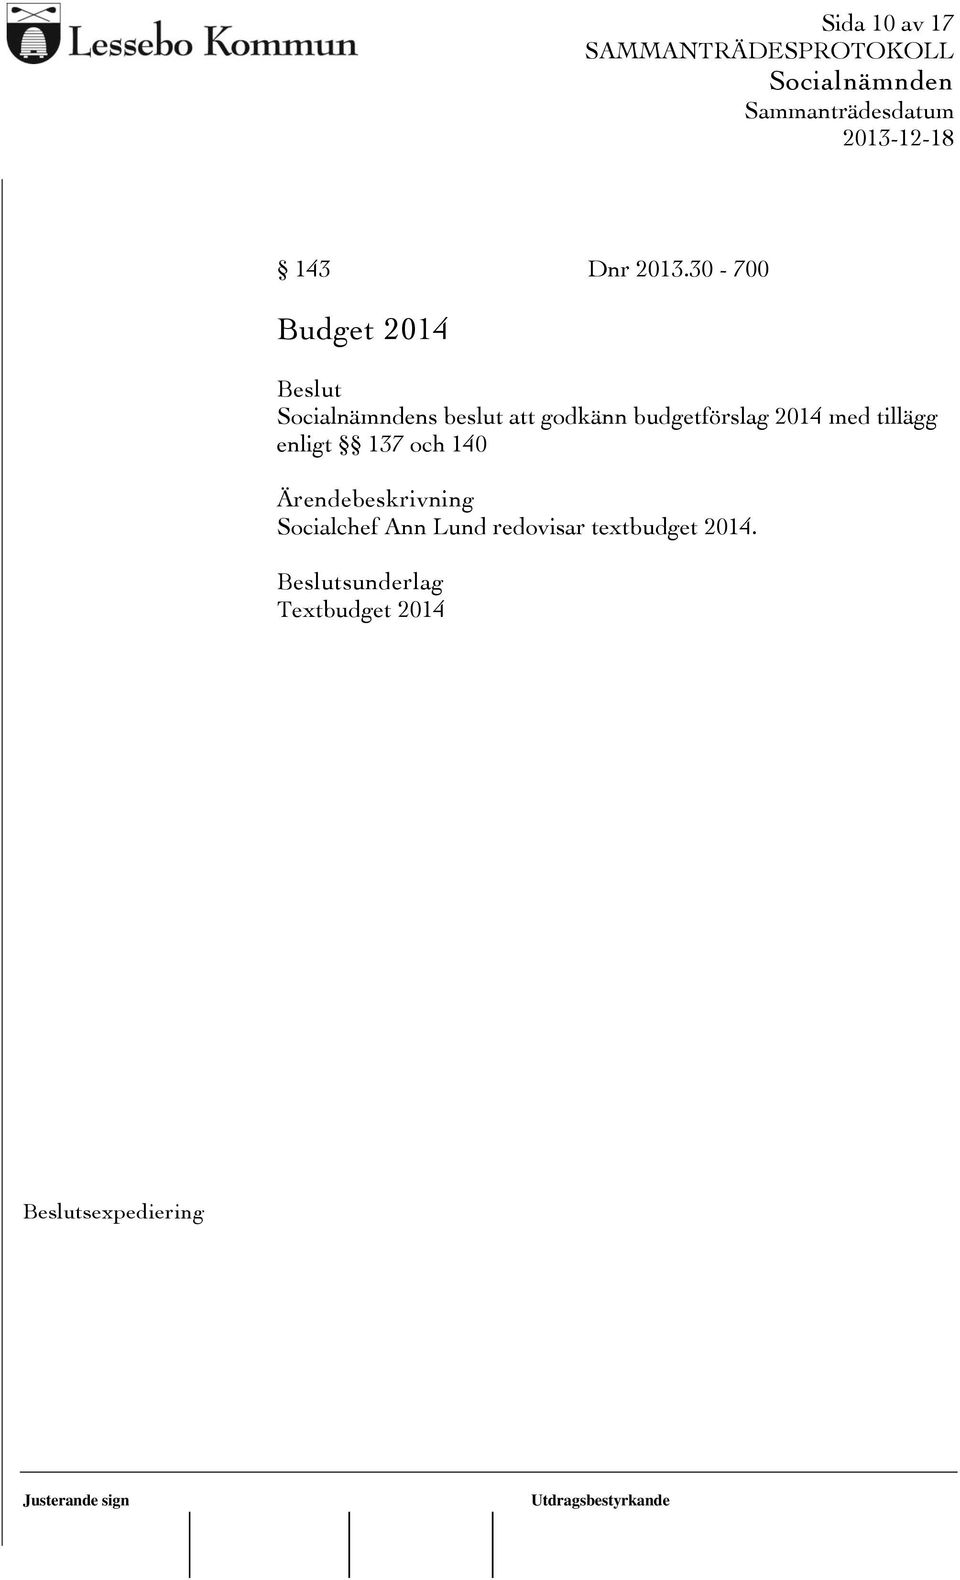 budgetförslag 2014 med tillägg enligt 137 och 140